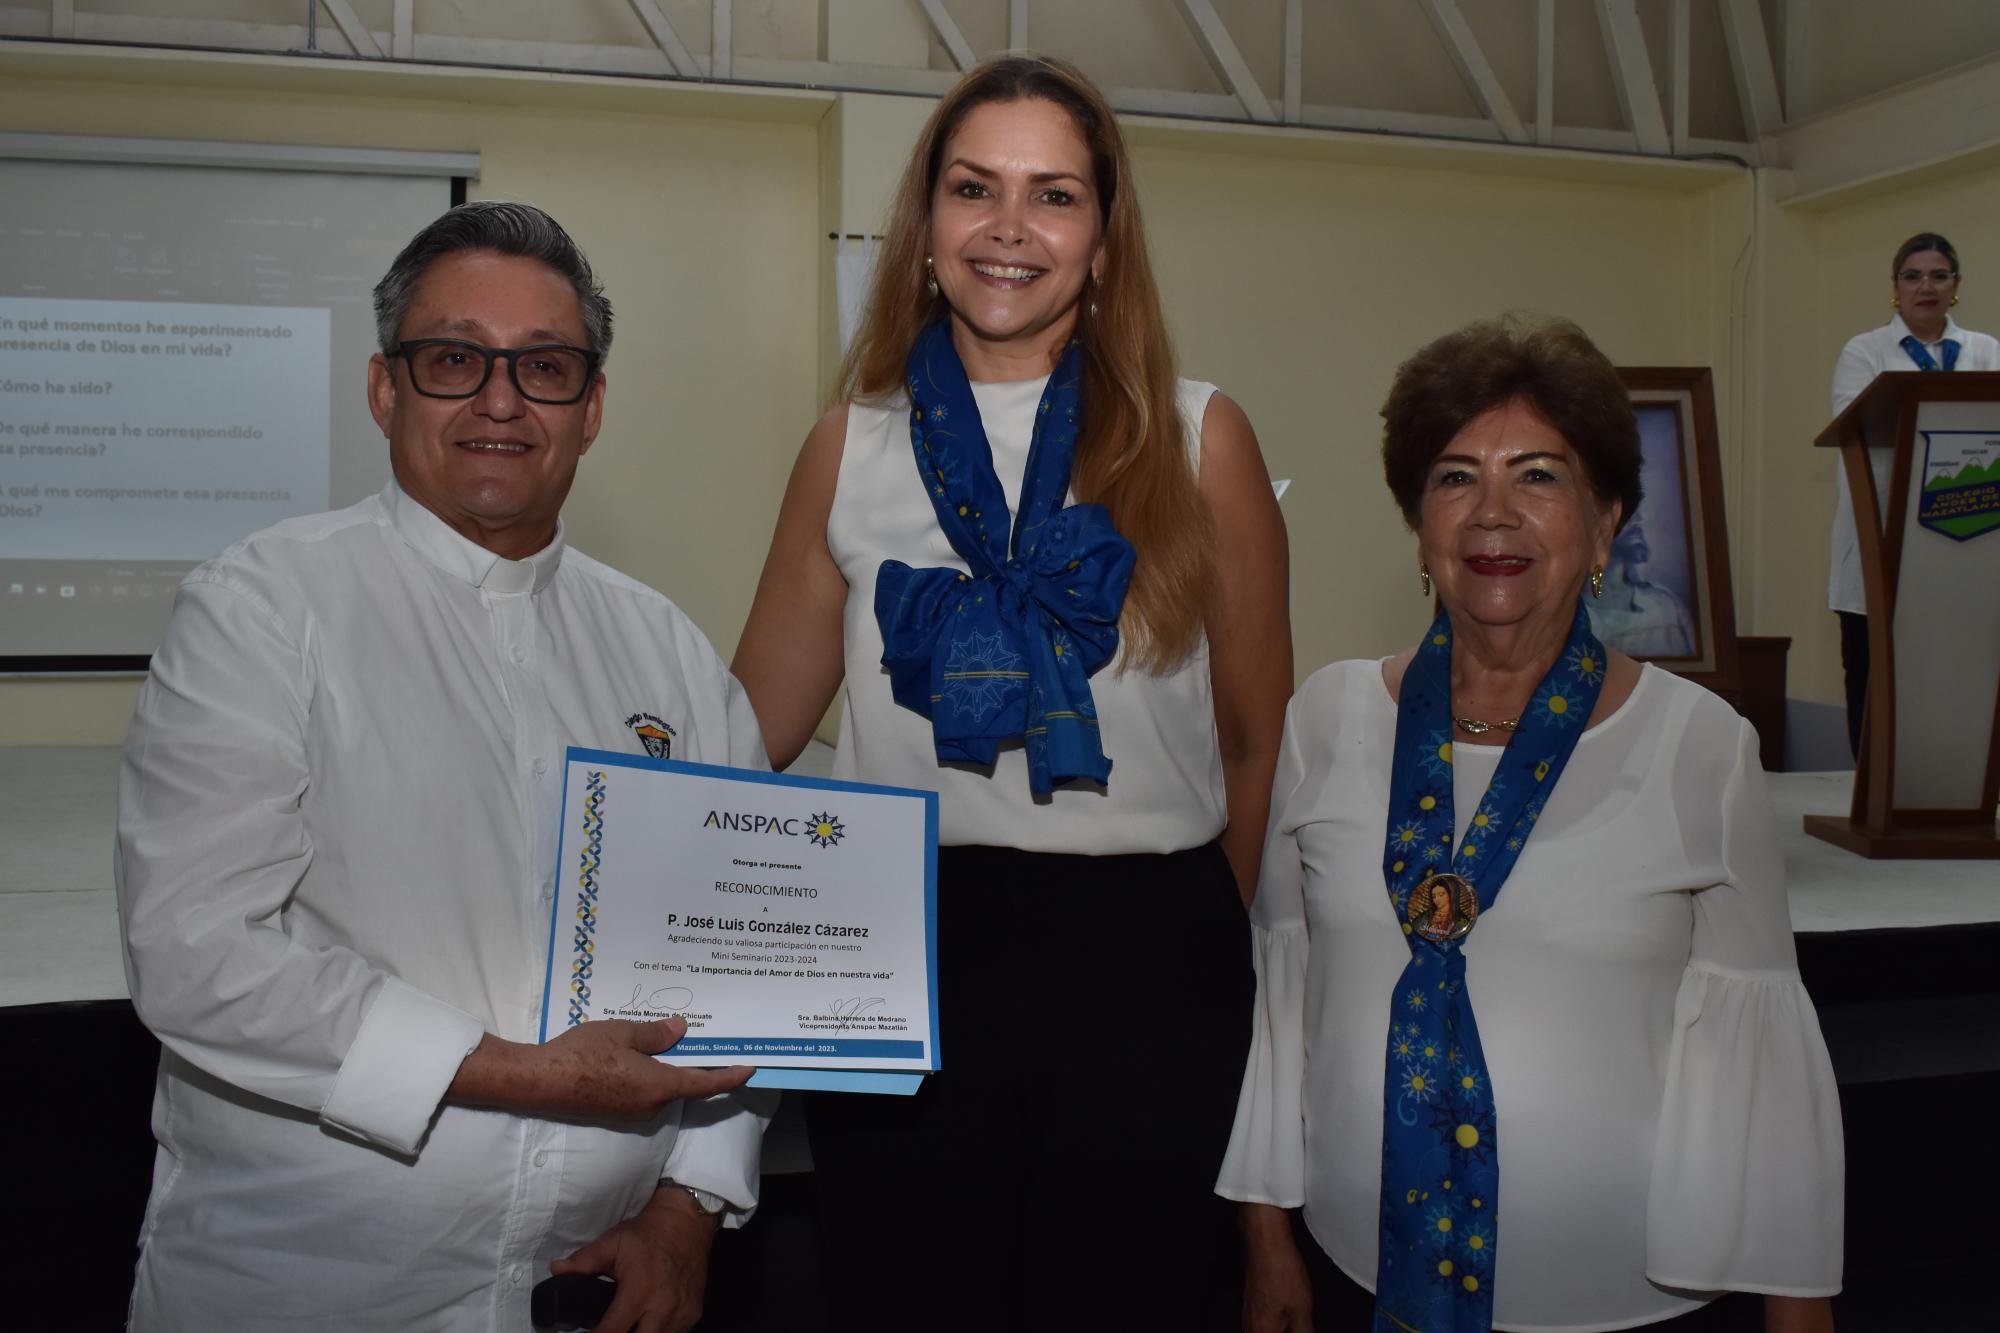 $!El Padre José Luis González Cazárez recibe el diploma de manos de Imelda Morales de Chicuate, presidenta de Anspac Mazatlán en compañía de Lucy Soto de Calleros.